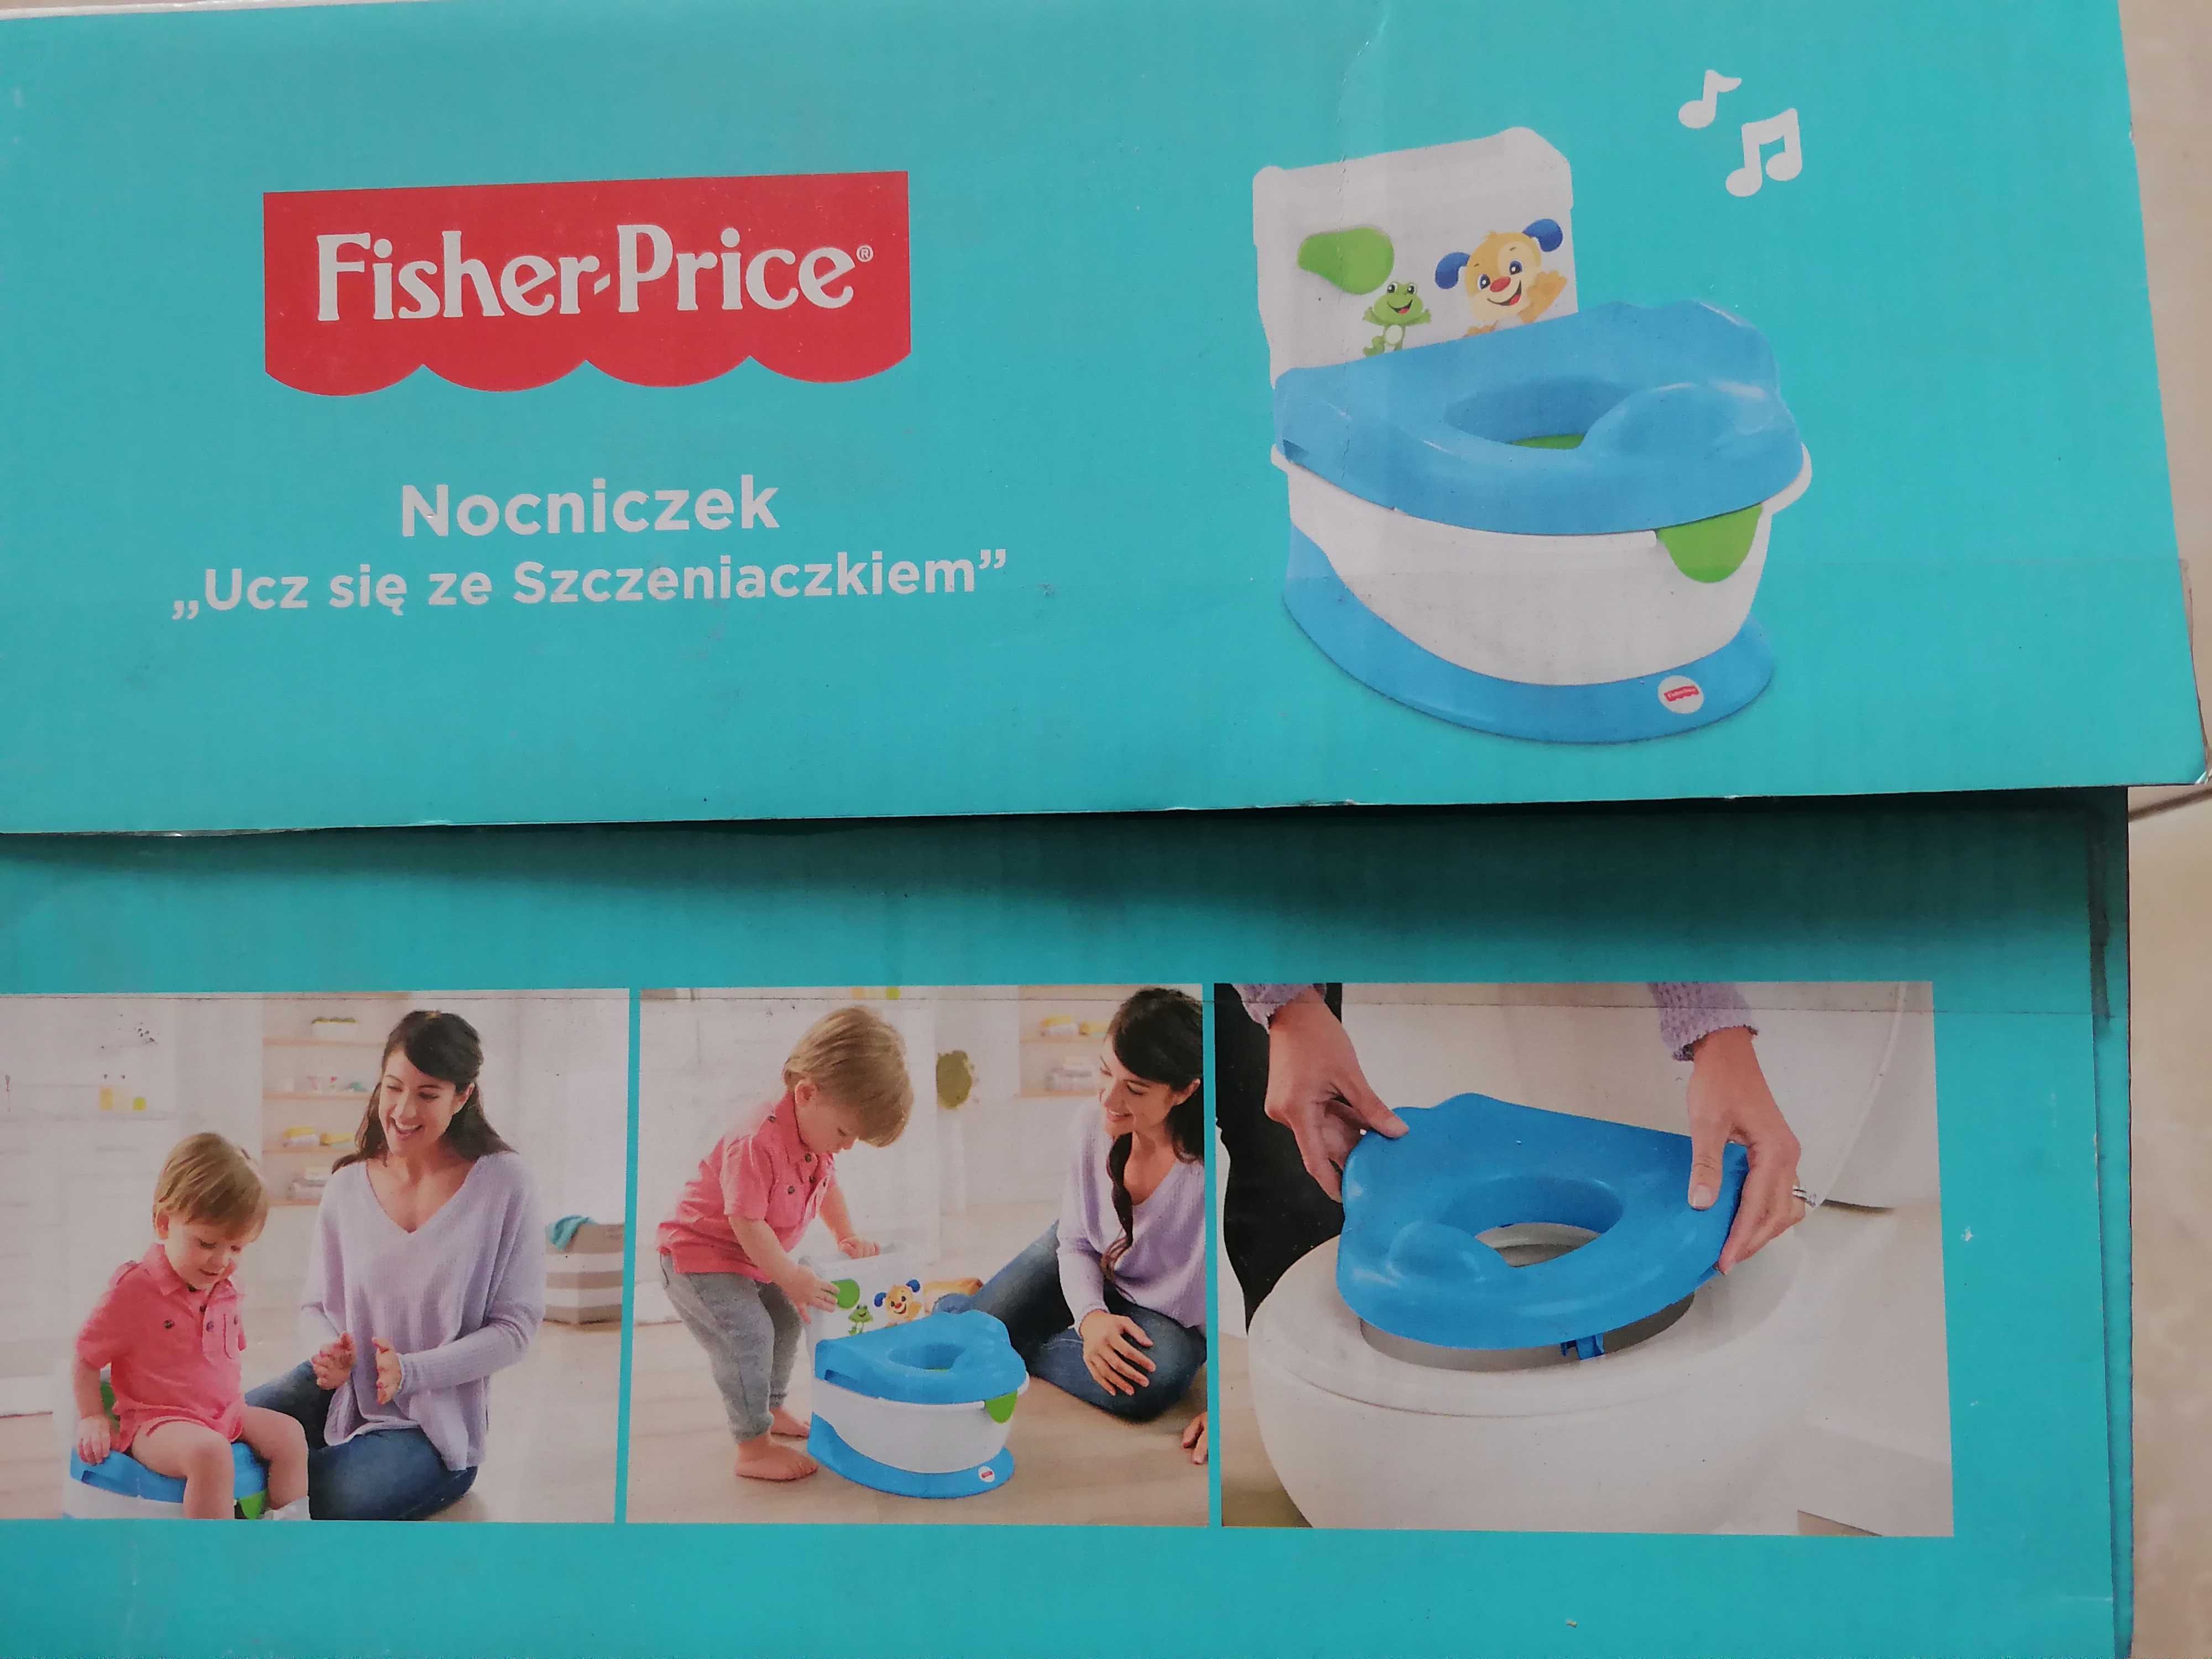 Nocniczek fisher price